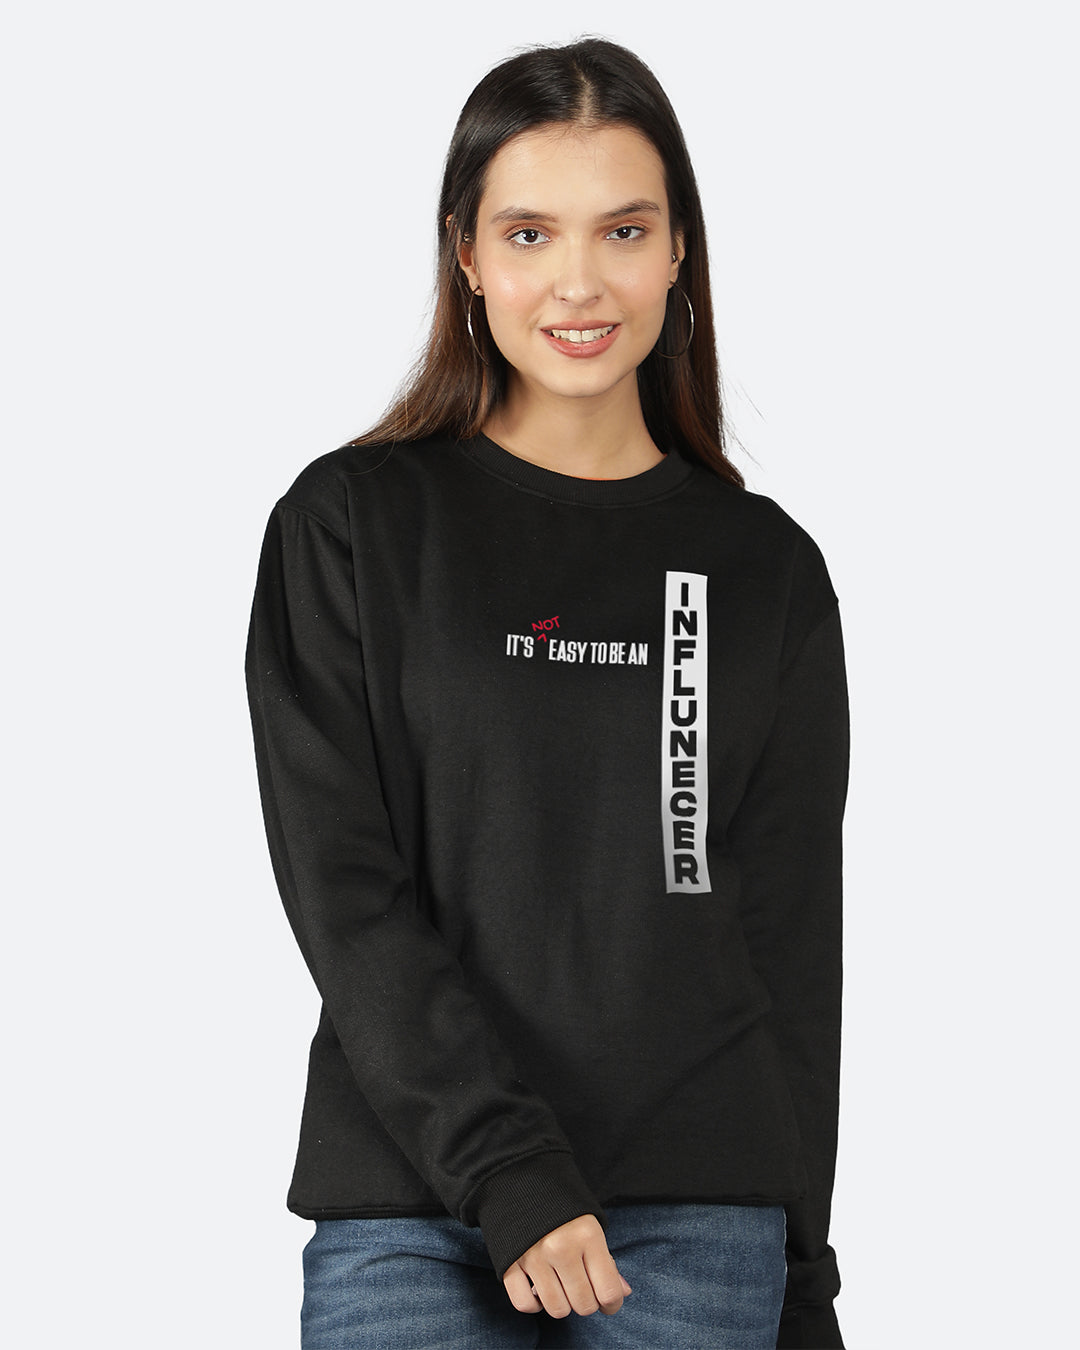 Influencer Women Sweatshirt